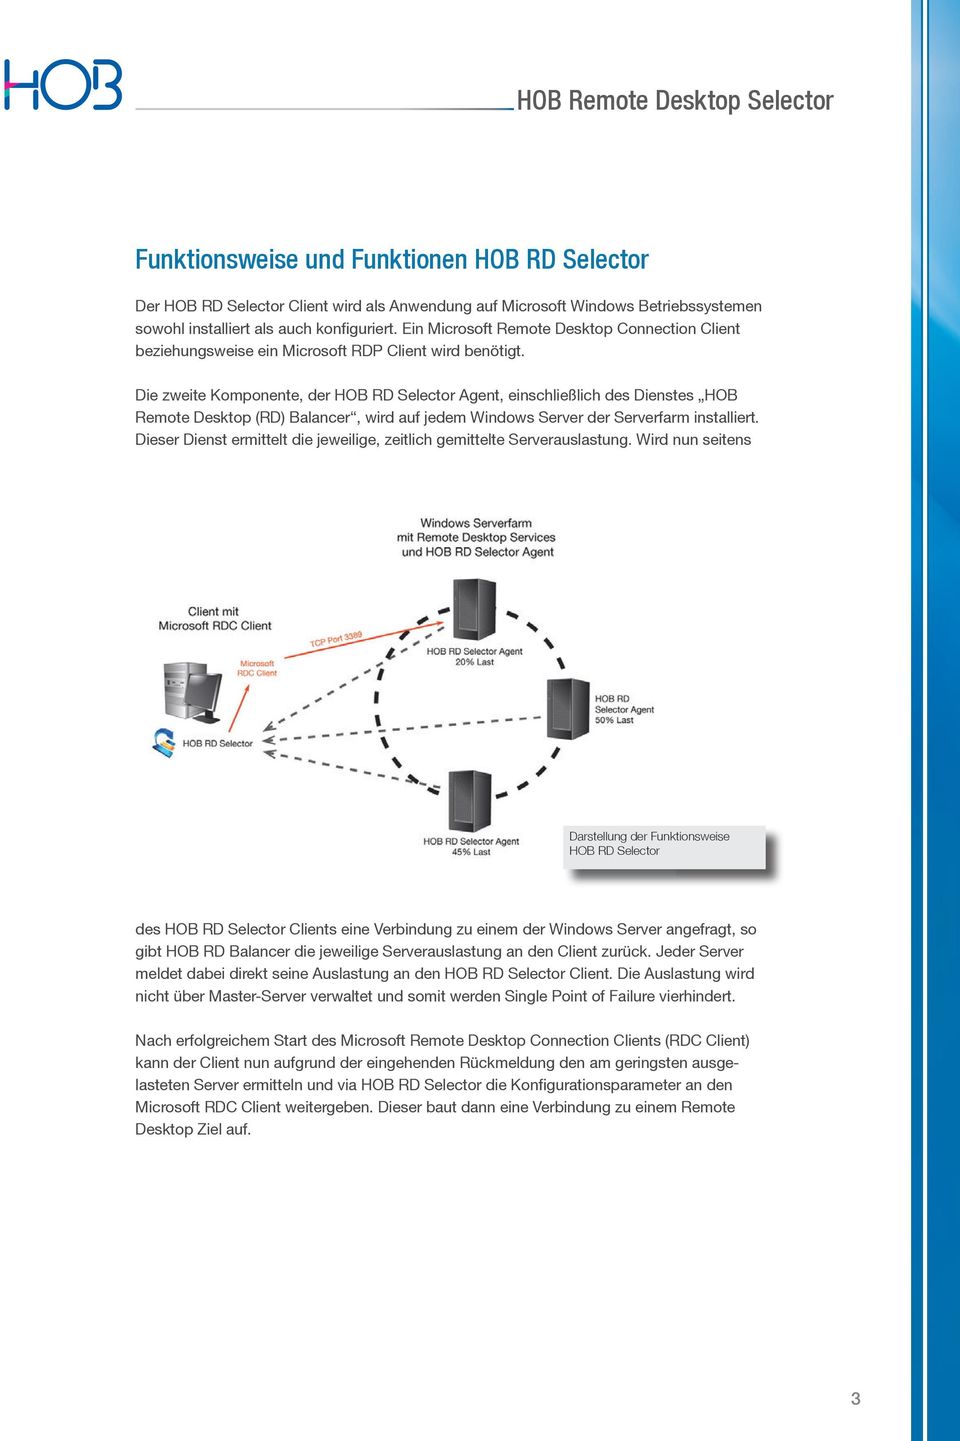 Die zweite Komponente, der HOB RD Selector Agent, einschließlich des Dienstes HOB Remote Desktop (RD) Balancer, wird auf jedem Windows Server der Serverfarm installiert.